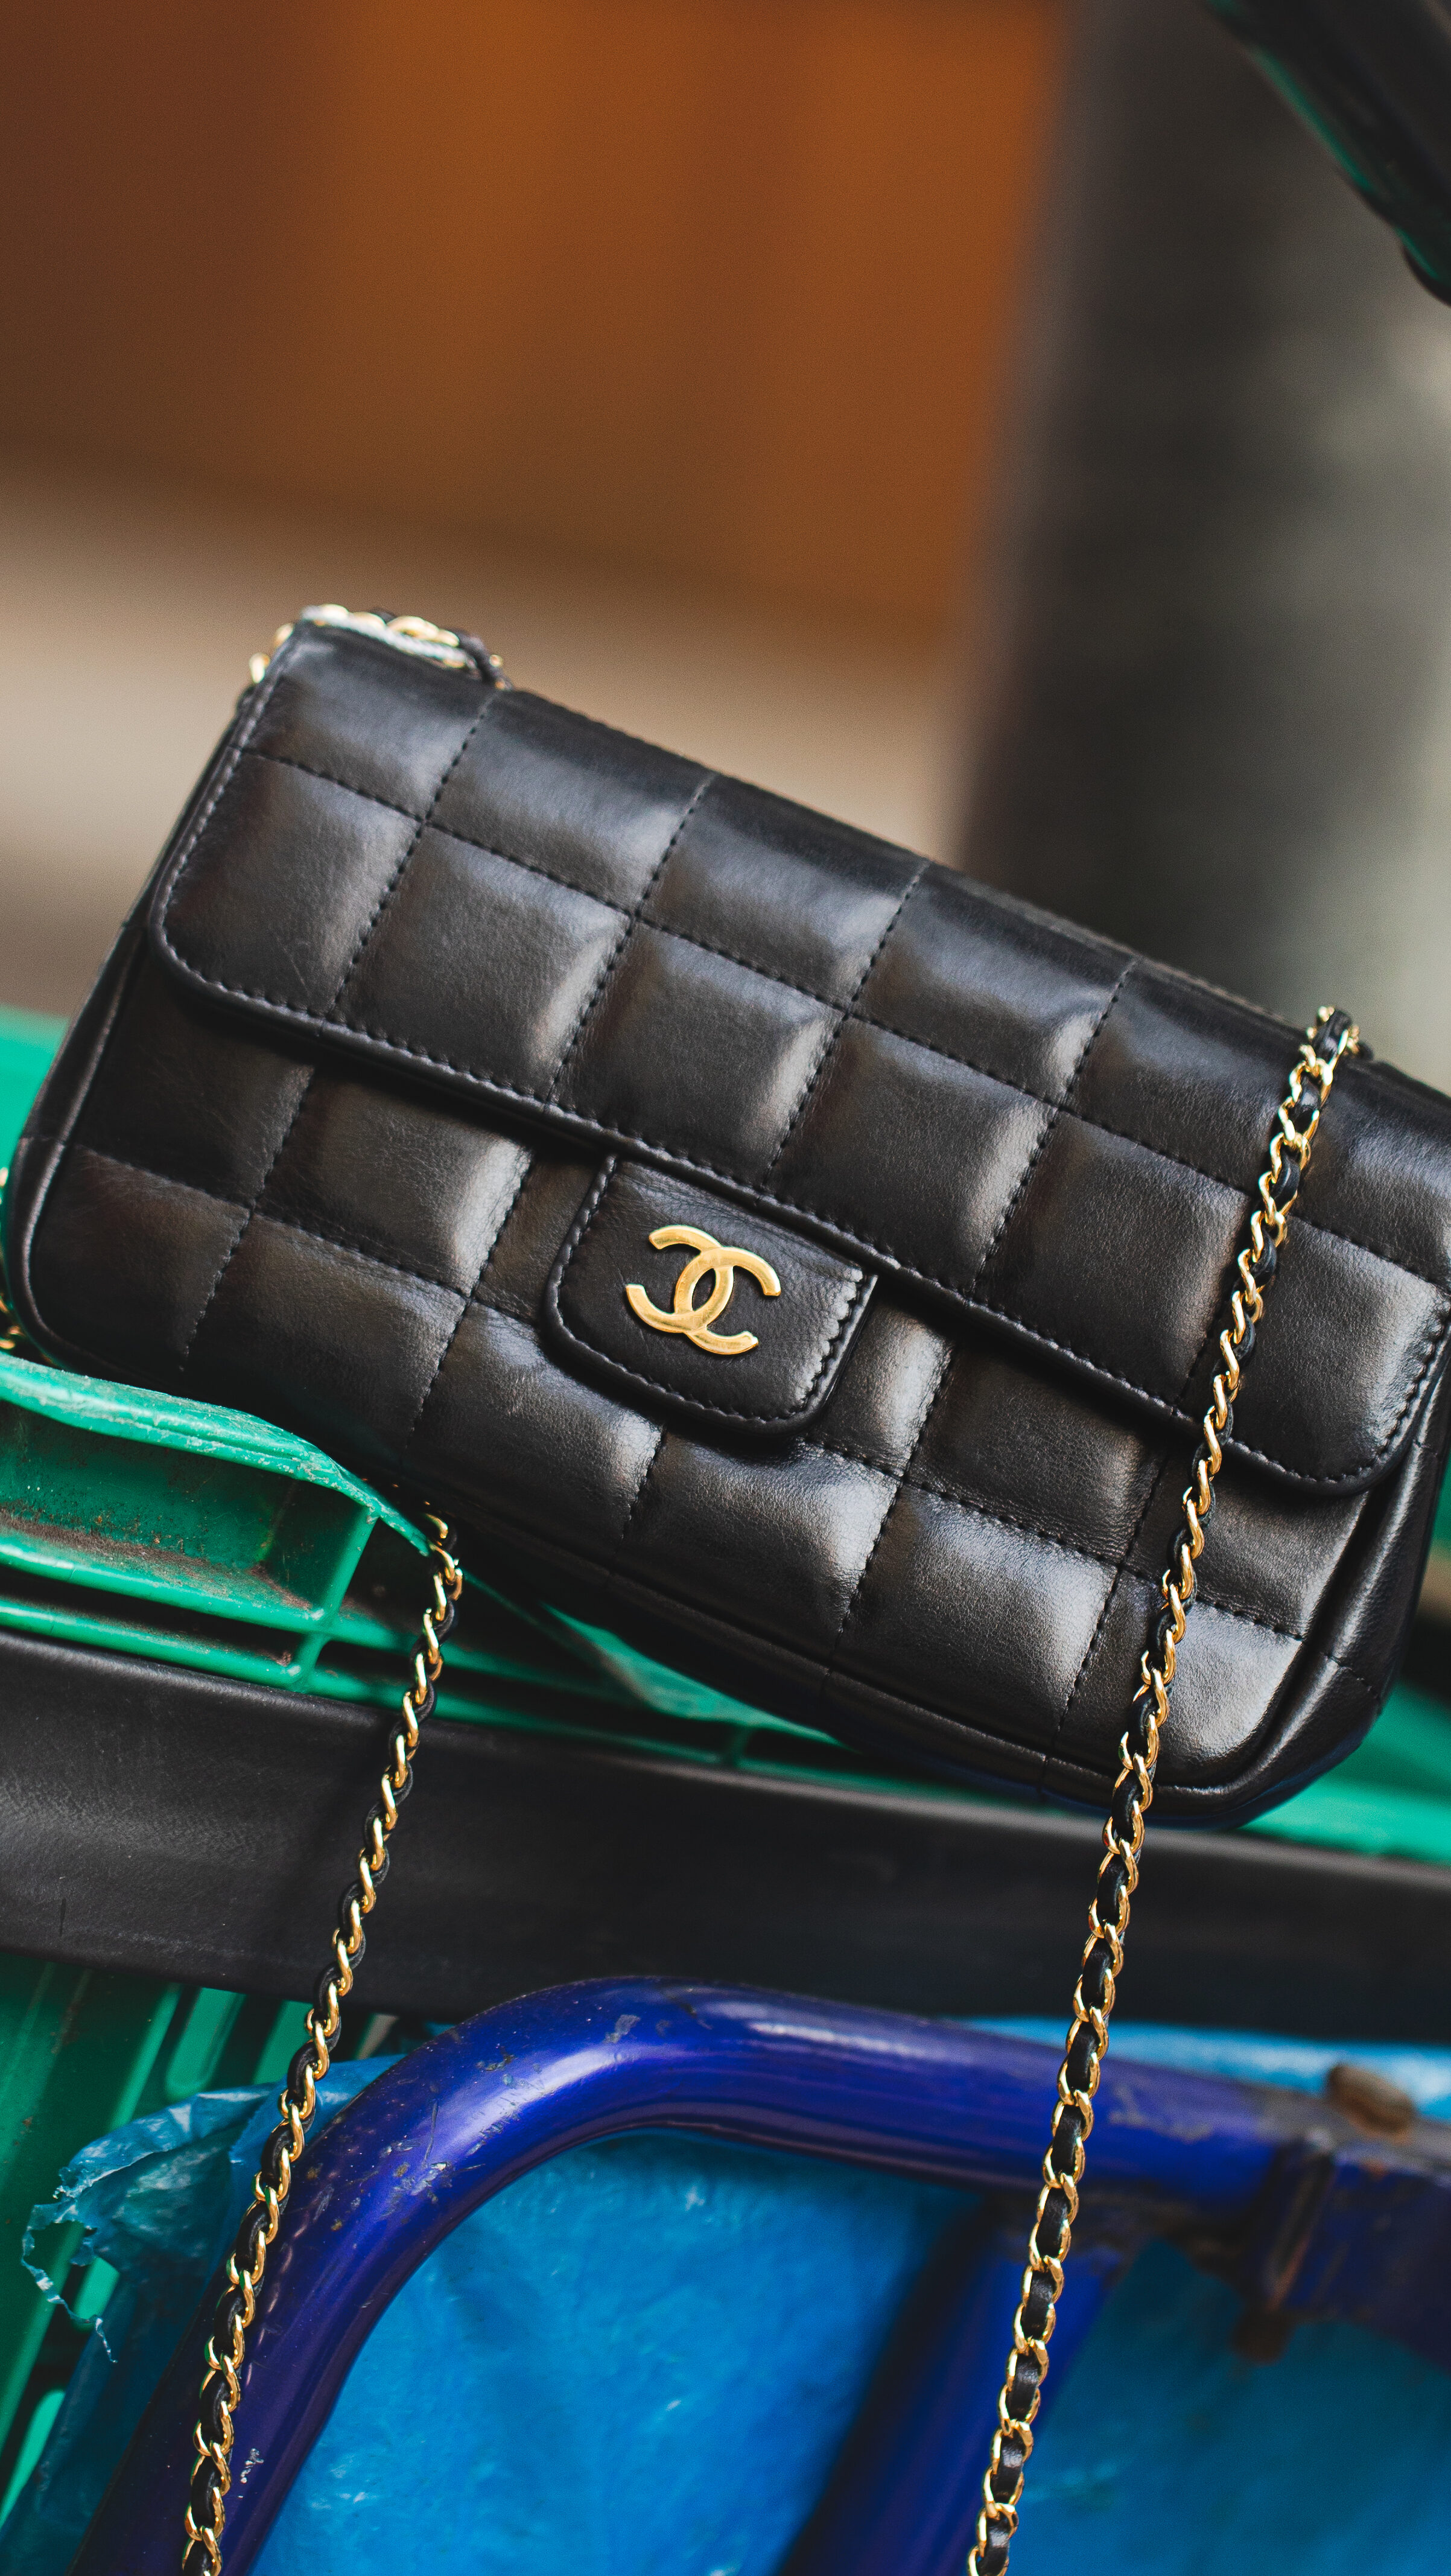 Confira curiosidades sobre as bolsas Flap Chanel!